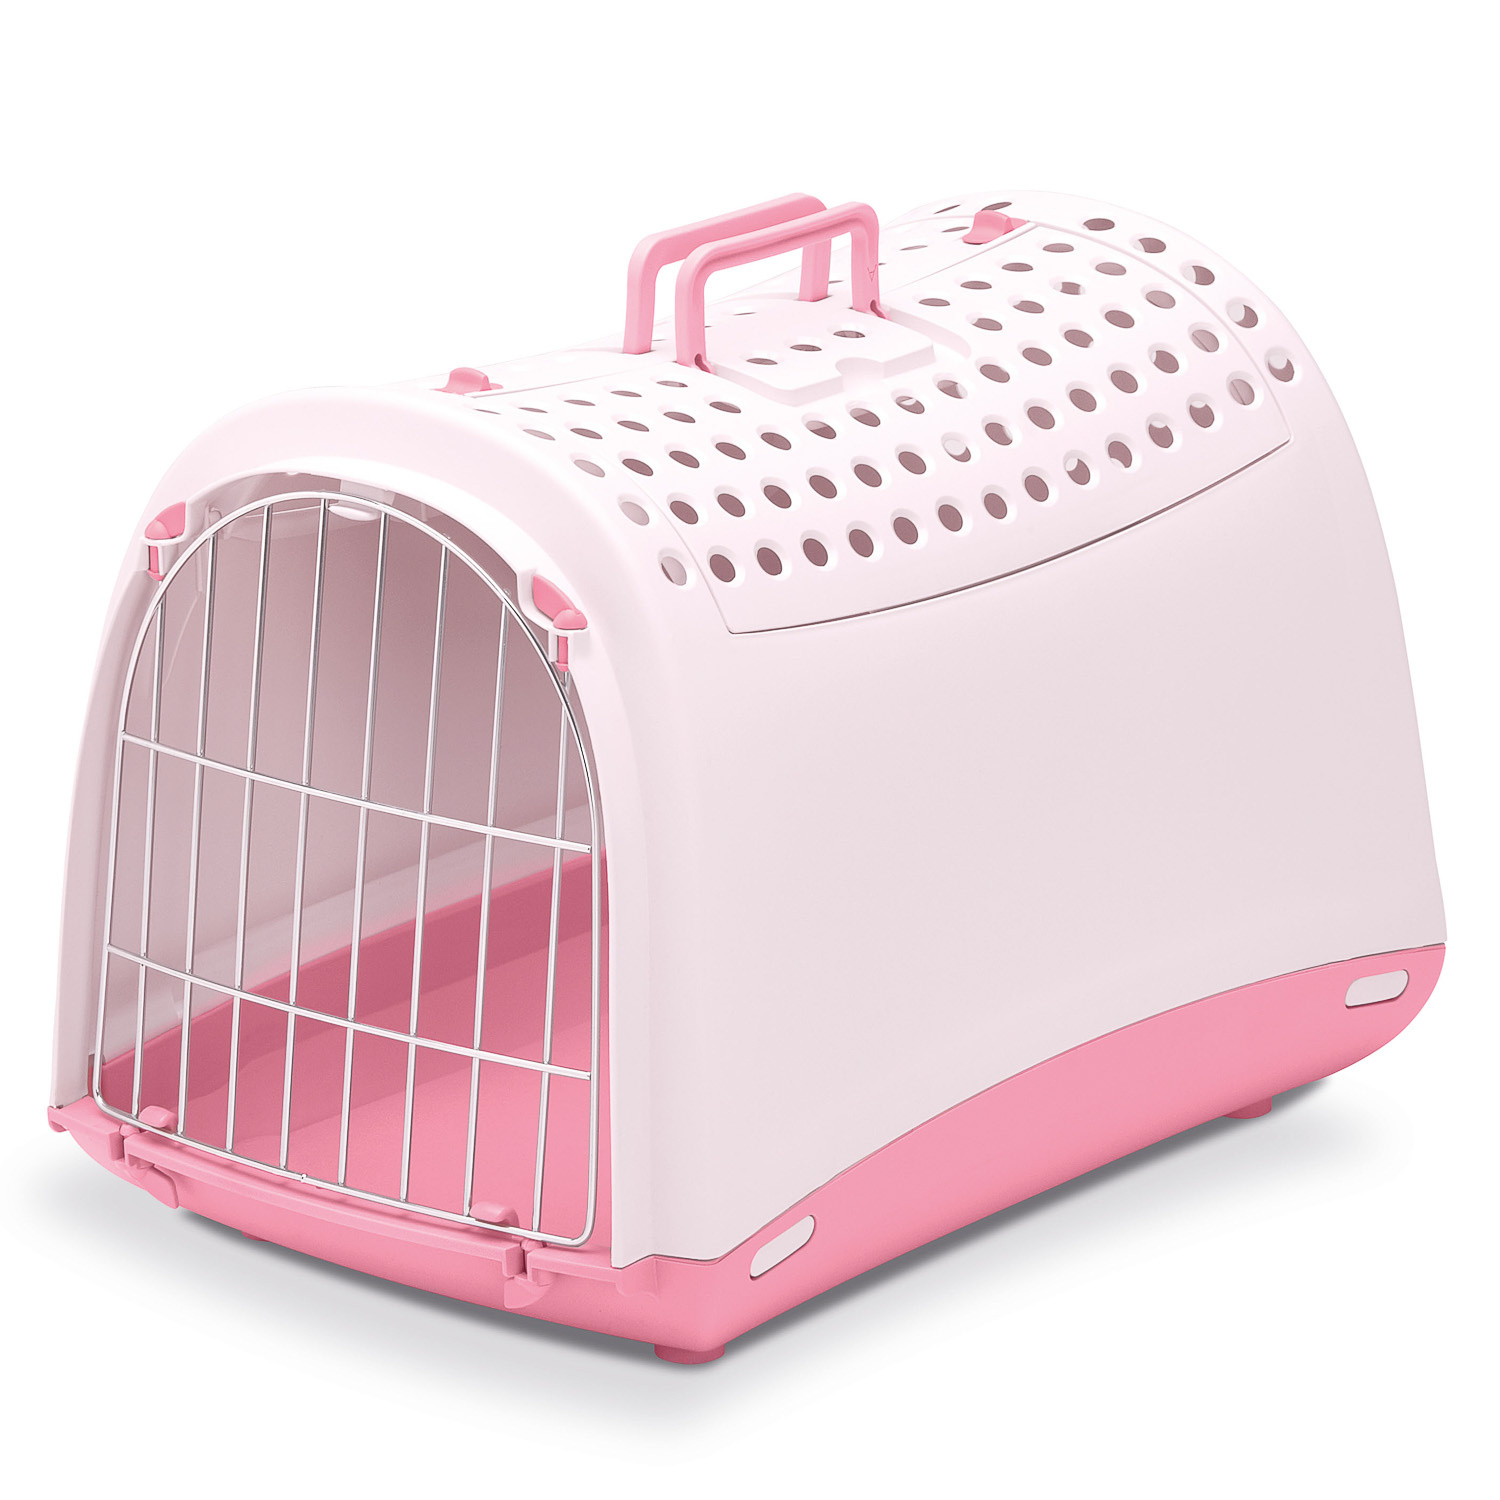 IMAC IMAC переноска для кошек и собак, нежно-розовый (1,37 кг) переноска imac linus cabrio для животных 50 х 32 х 34 5 см пепельно розовый